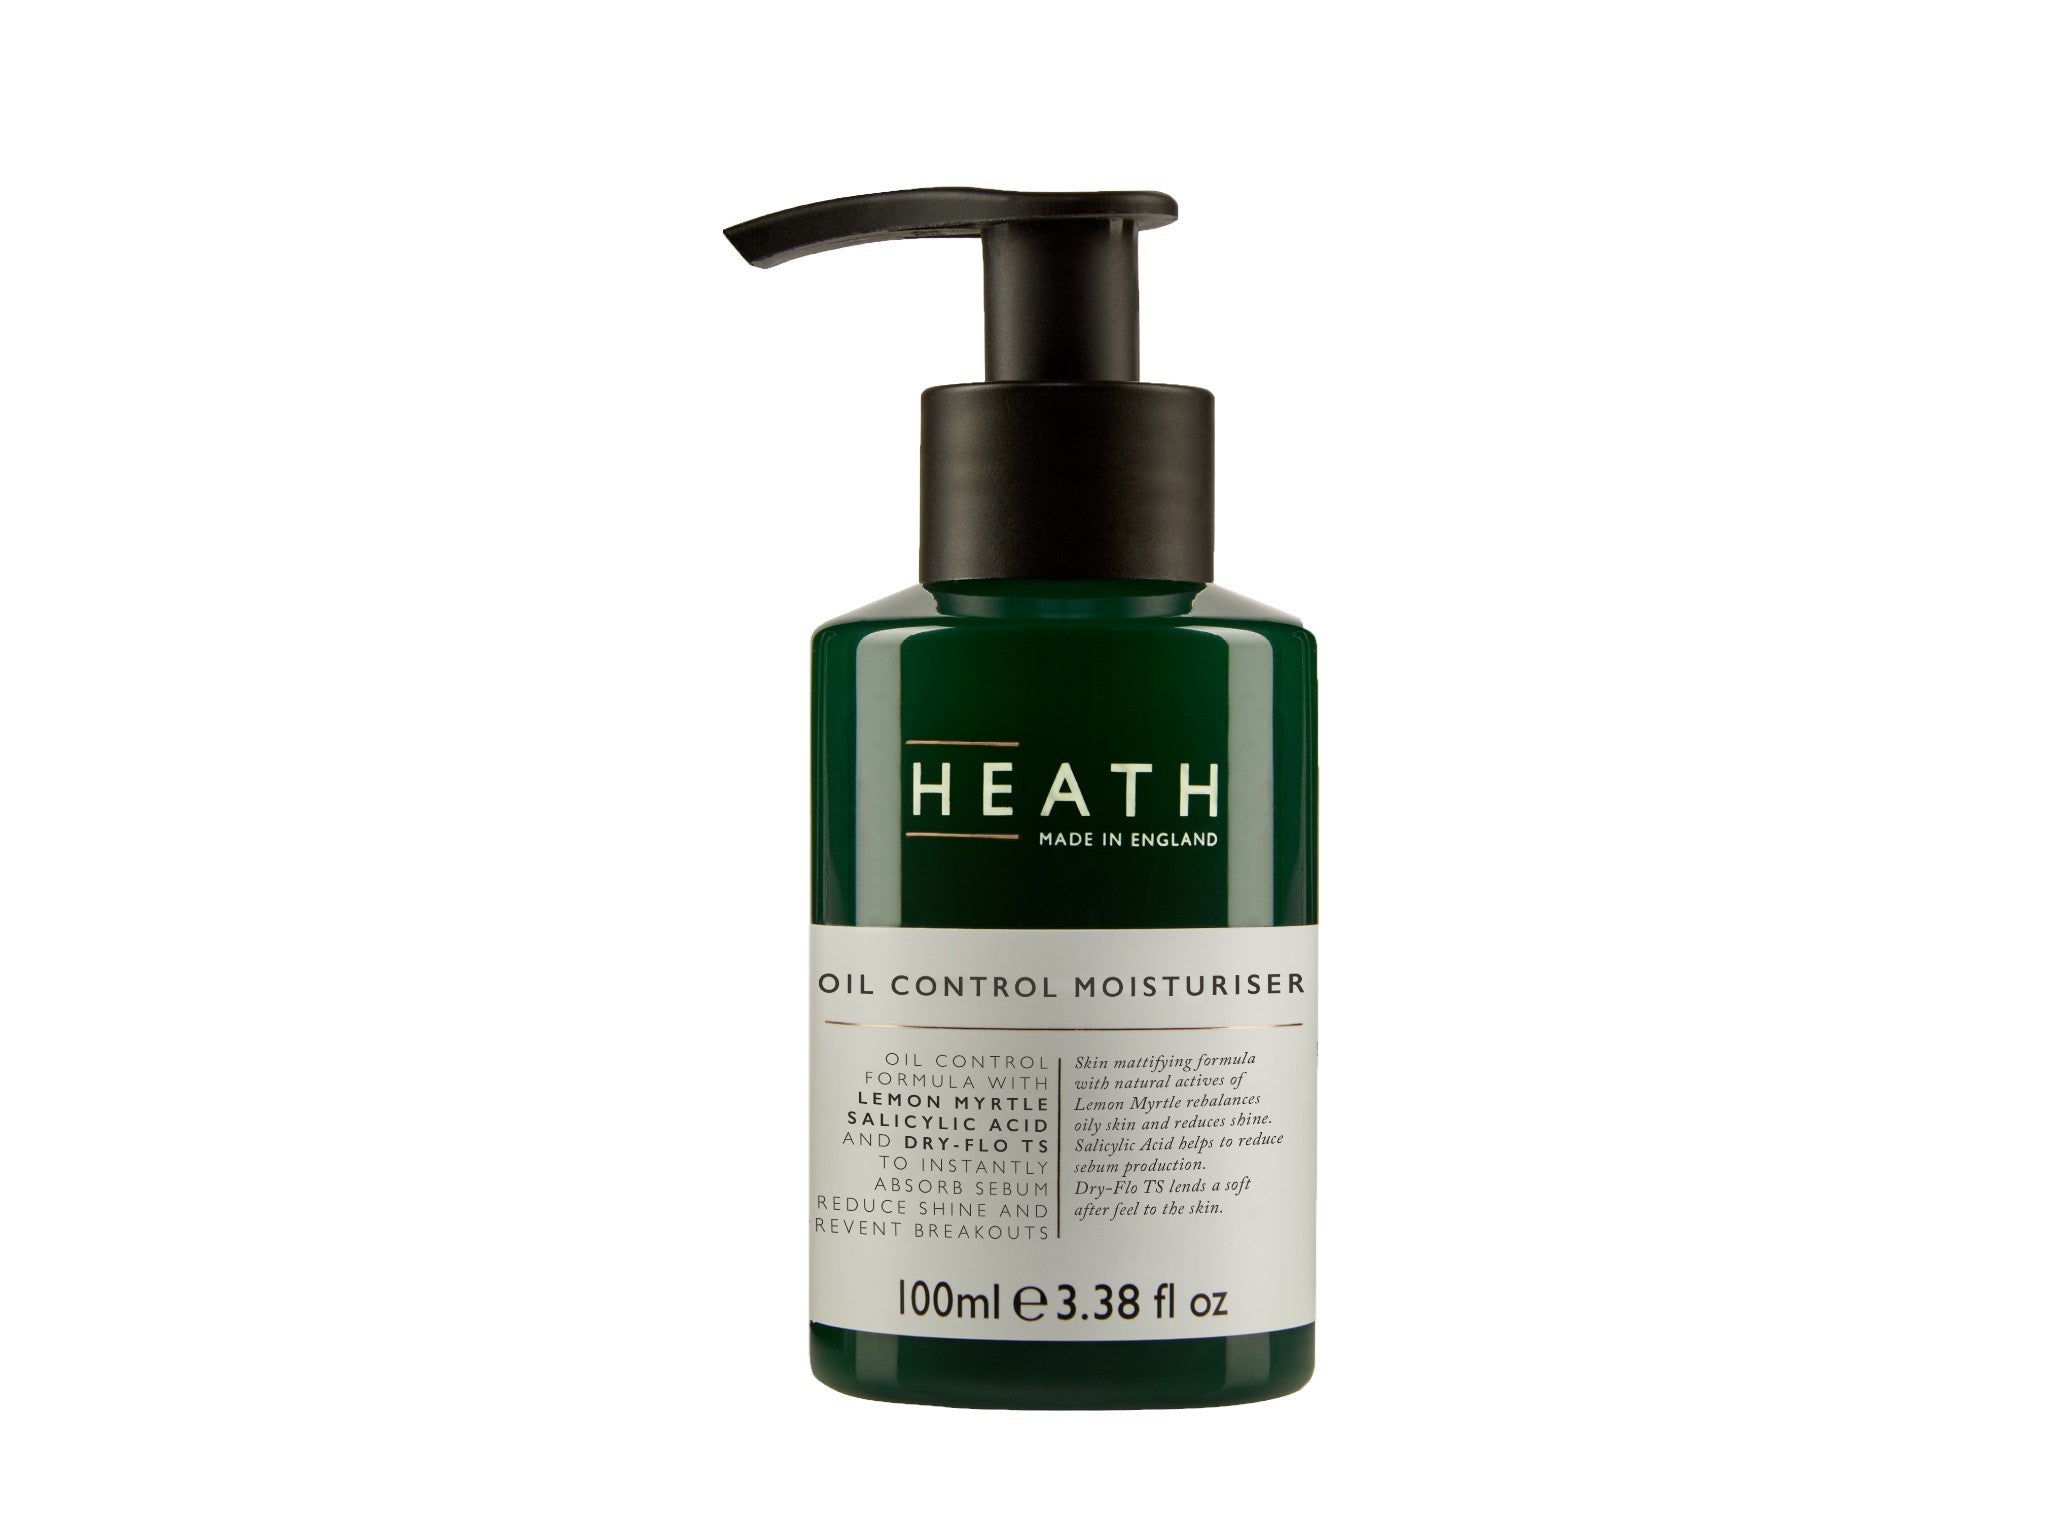 Heath Oil control moisturiser indybest